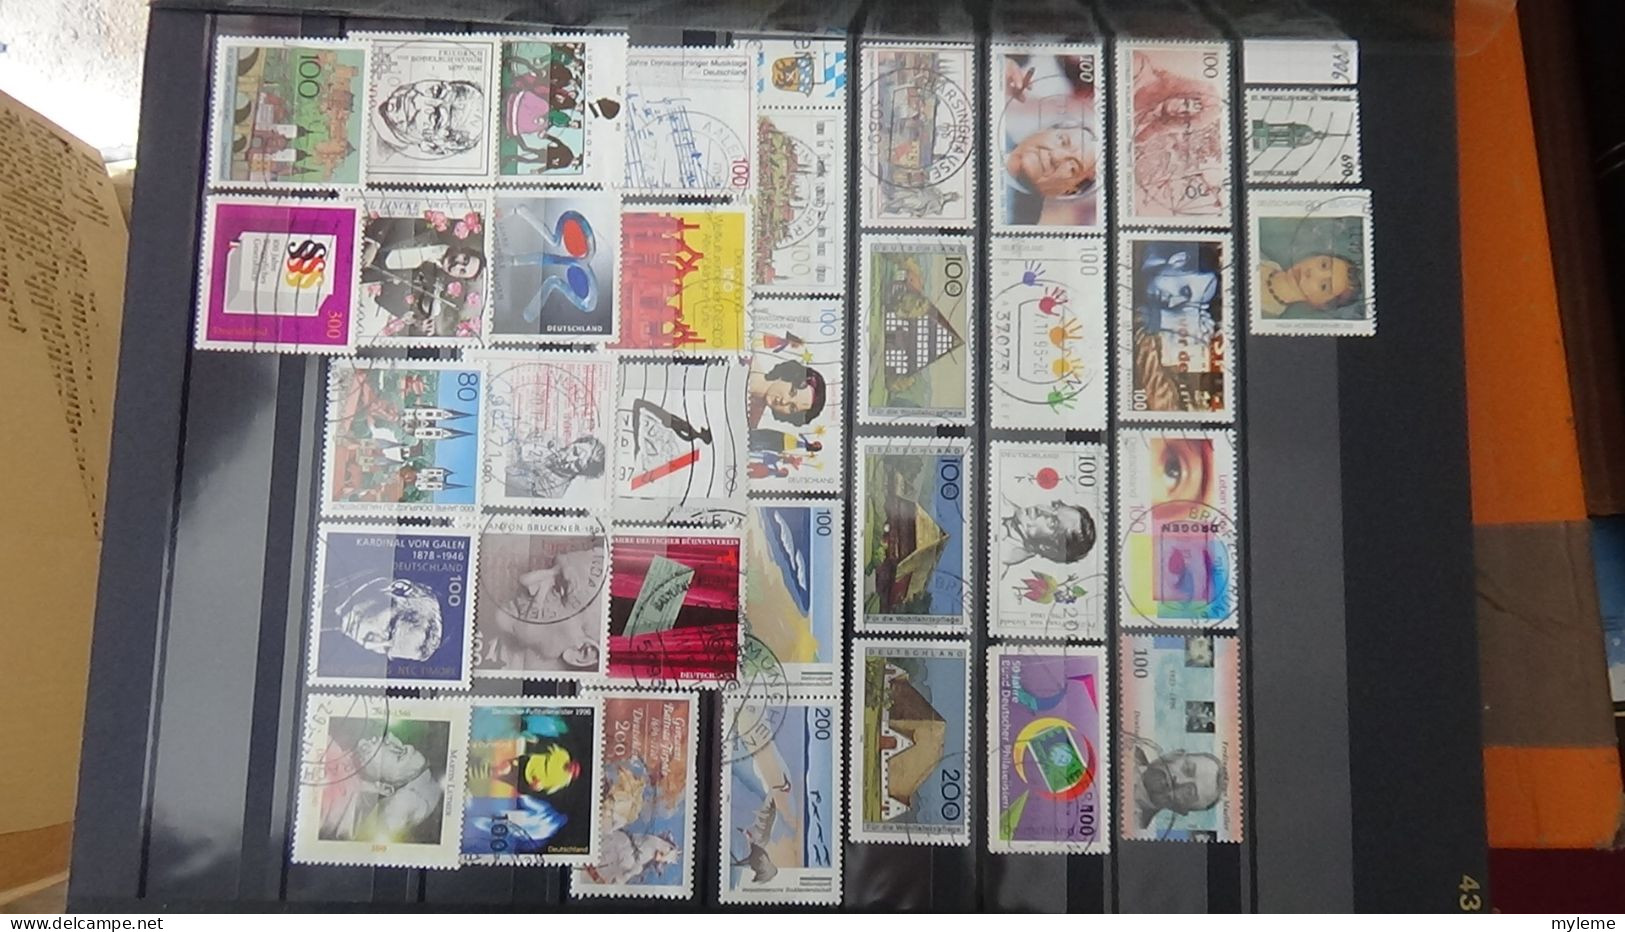 BF24 Ensemble de timbres de divers pays + bande N° 242A oblitérée et signée. Cote 1200 euros